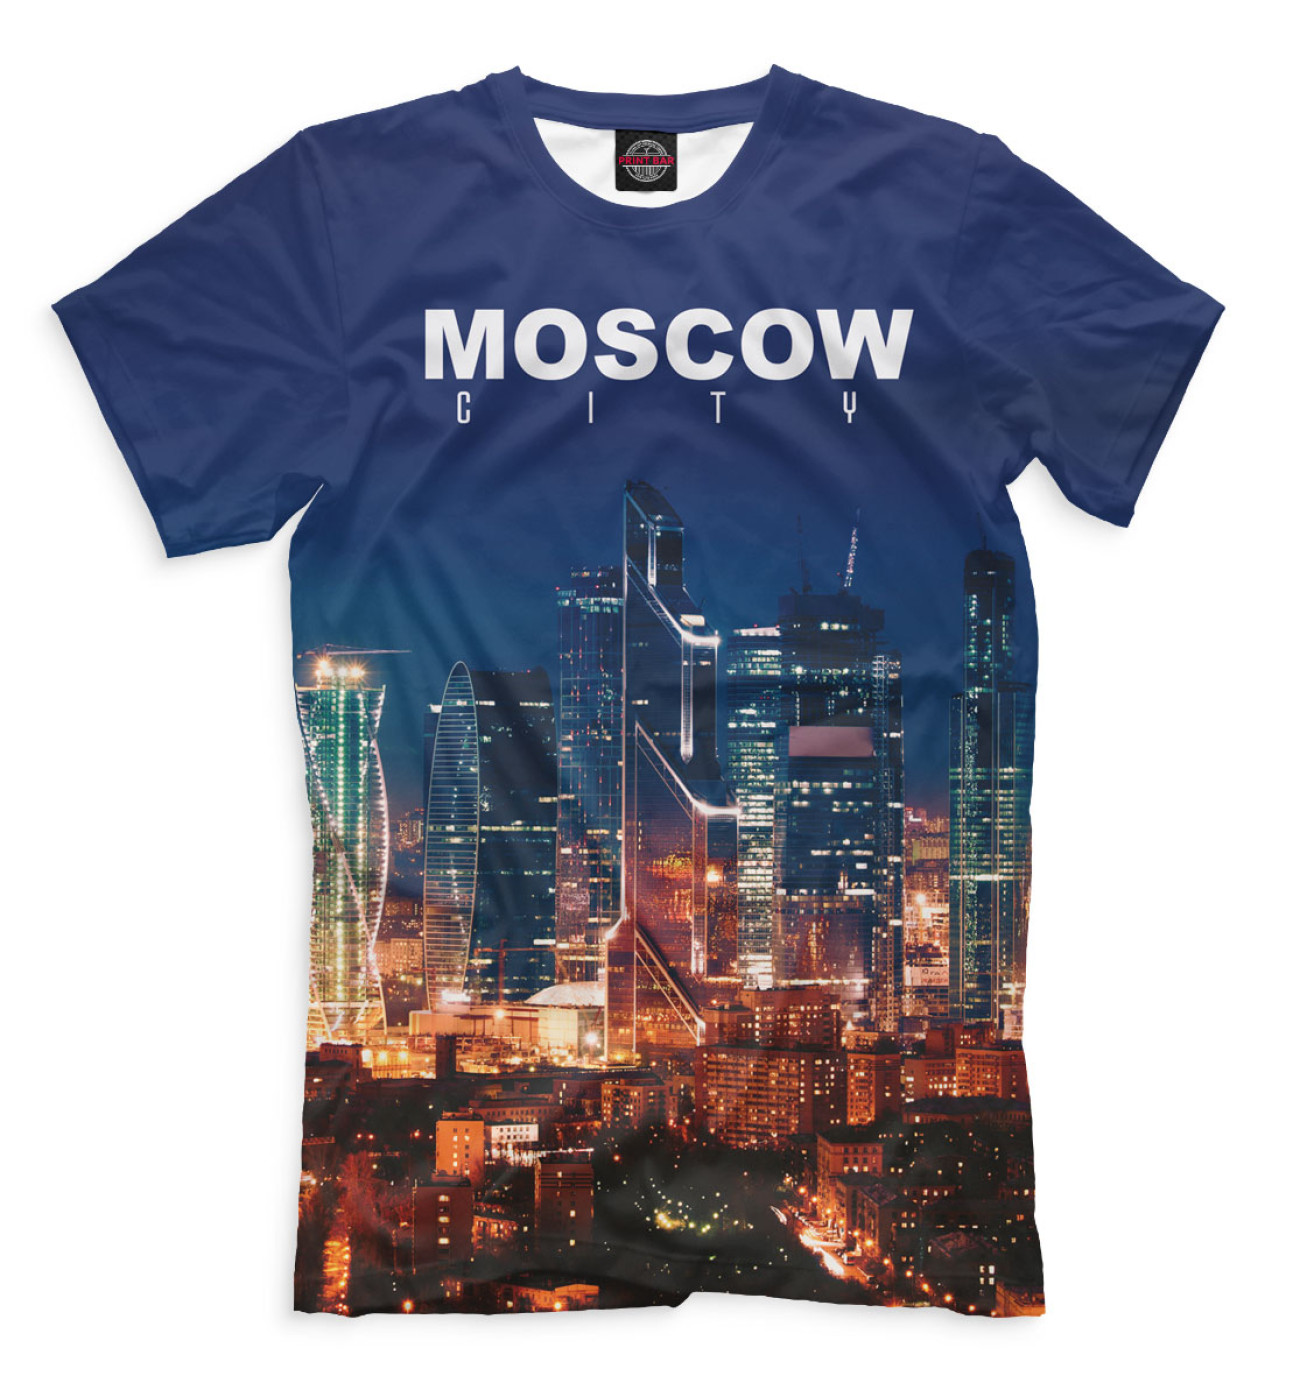 Мужская Футболка Москва, артикул: MOS-683044-fut-2